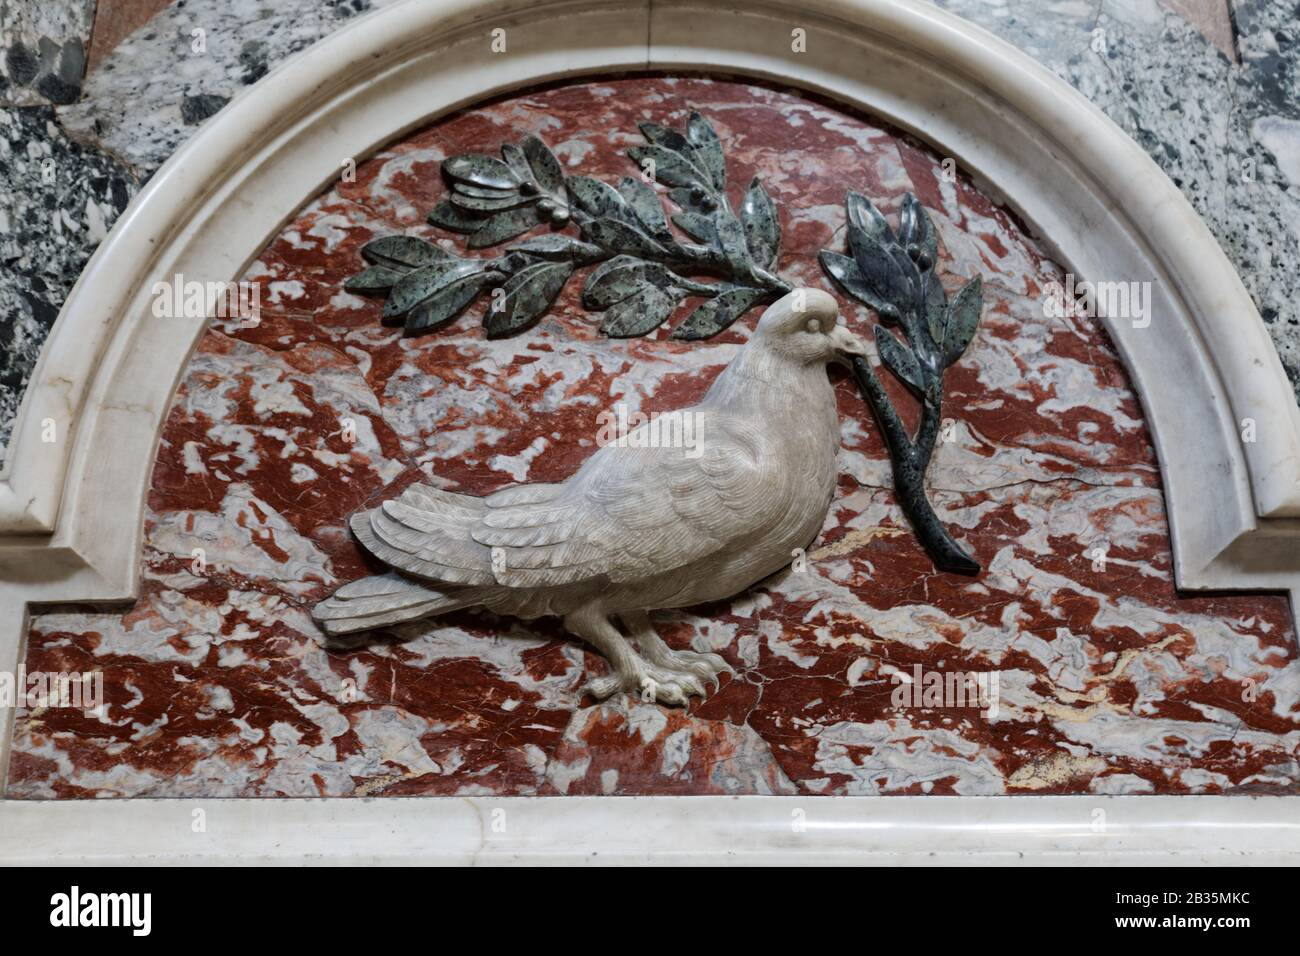 Colomba di pace, la colomba bianca che regge il rilievo del ramo d'ulivo da un muro della basilica di San Pietro nella città del Vaticano Foto Stock